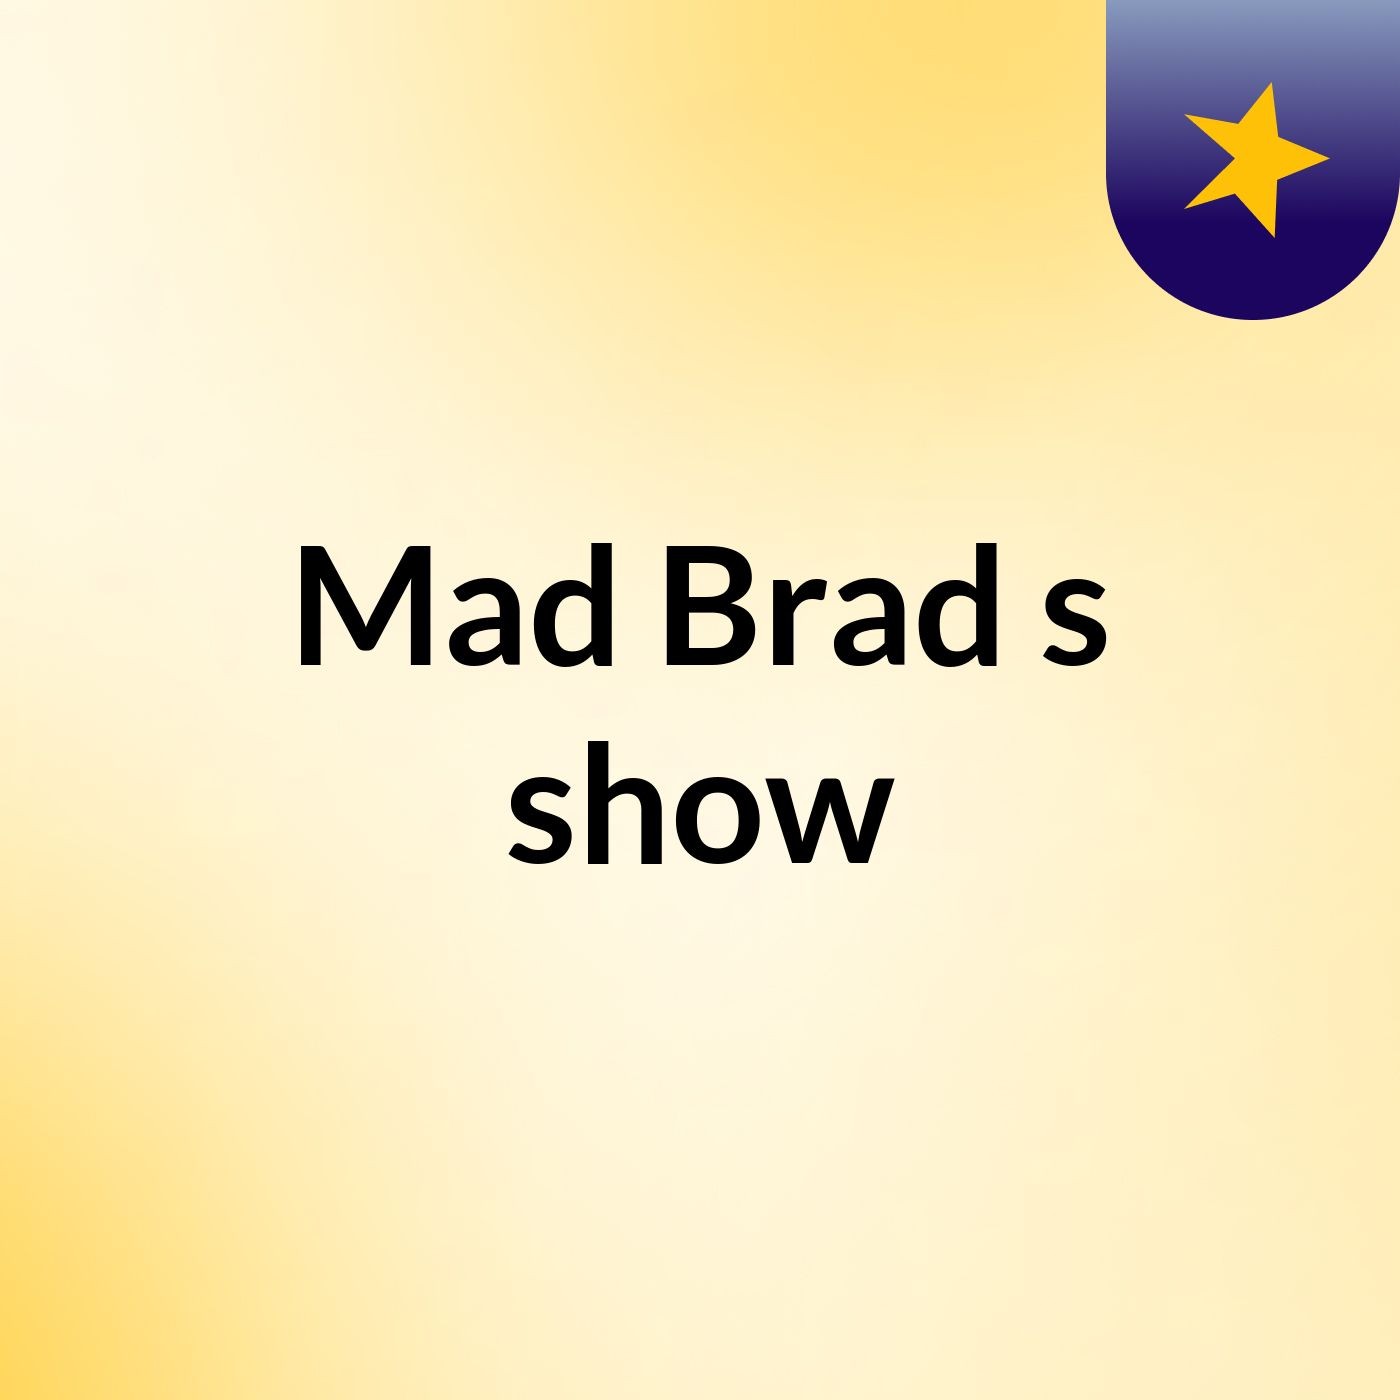 Mad Brad's show